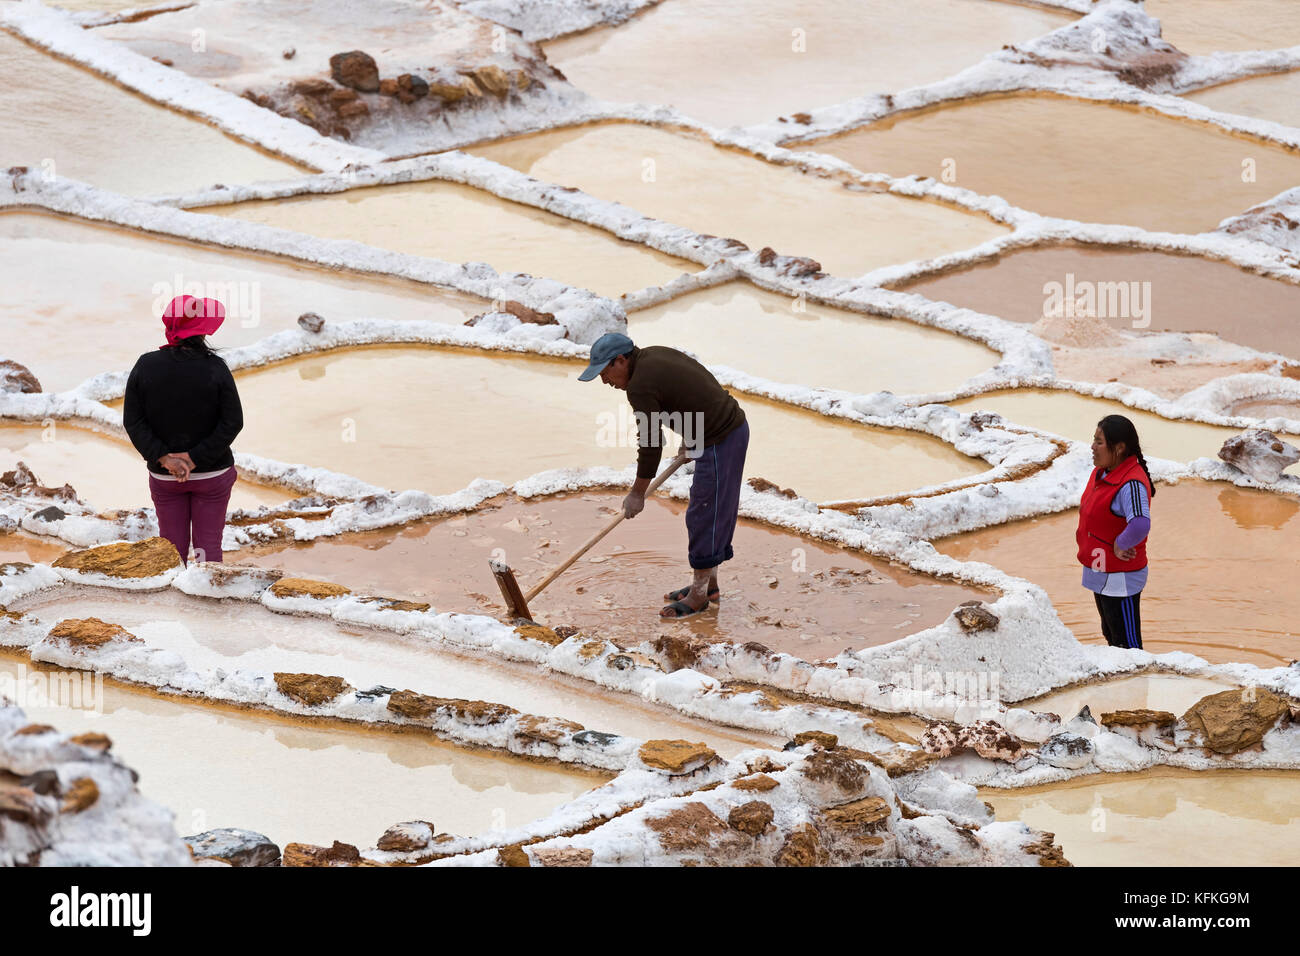 Les travailleurs dans les mines de sel de Maras, Vallée sacrée des incas, département de Cusco, Pérou Banque D'Images